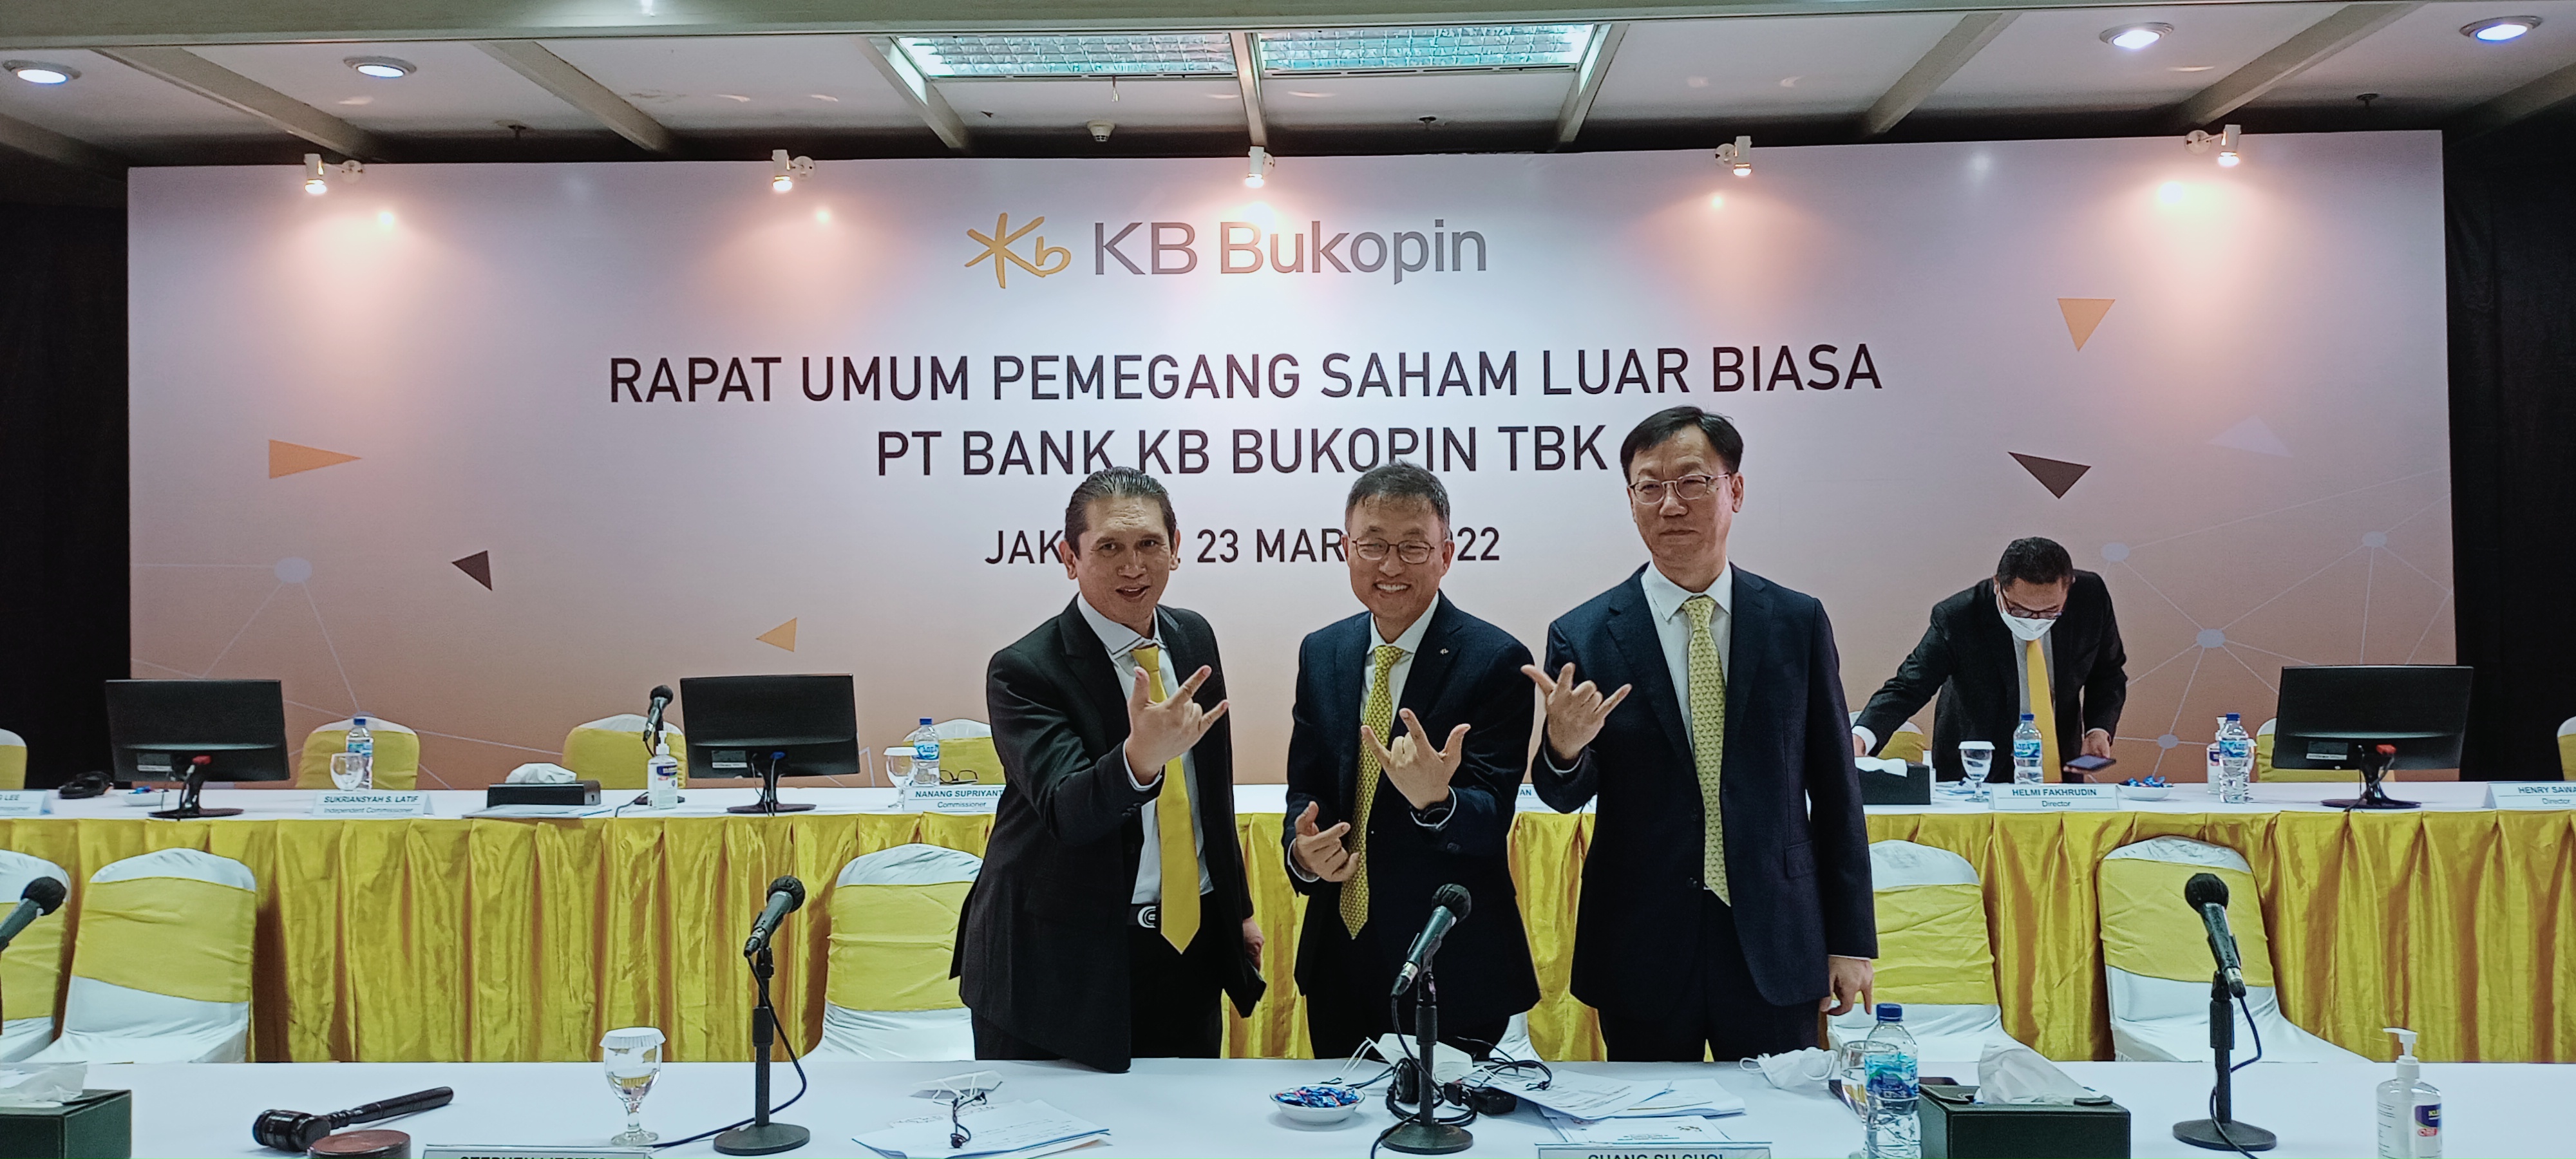 Angkat Jin Bum Kim Jadi Direktur, KB Bukopin (BBKP) Mantap Ubah Model Bisnis